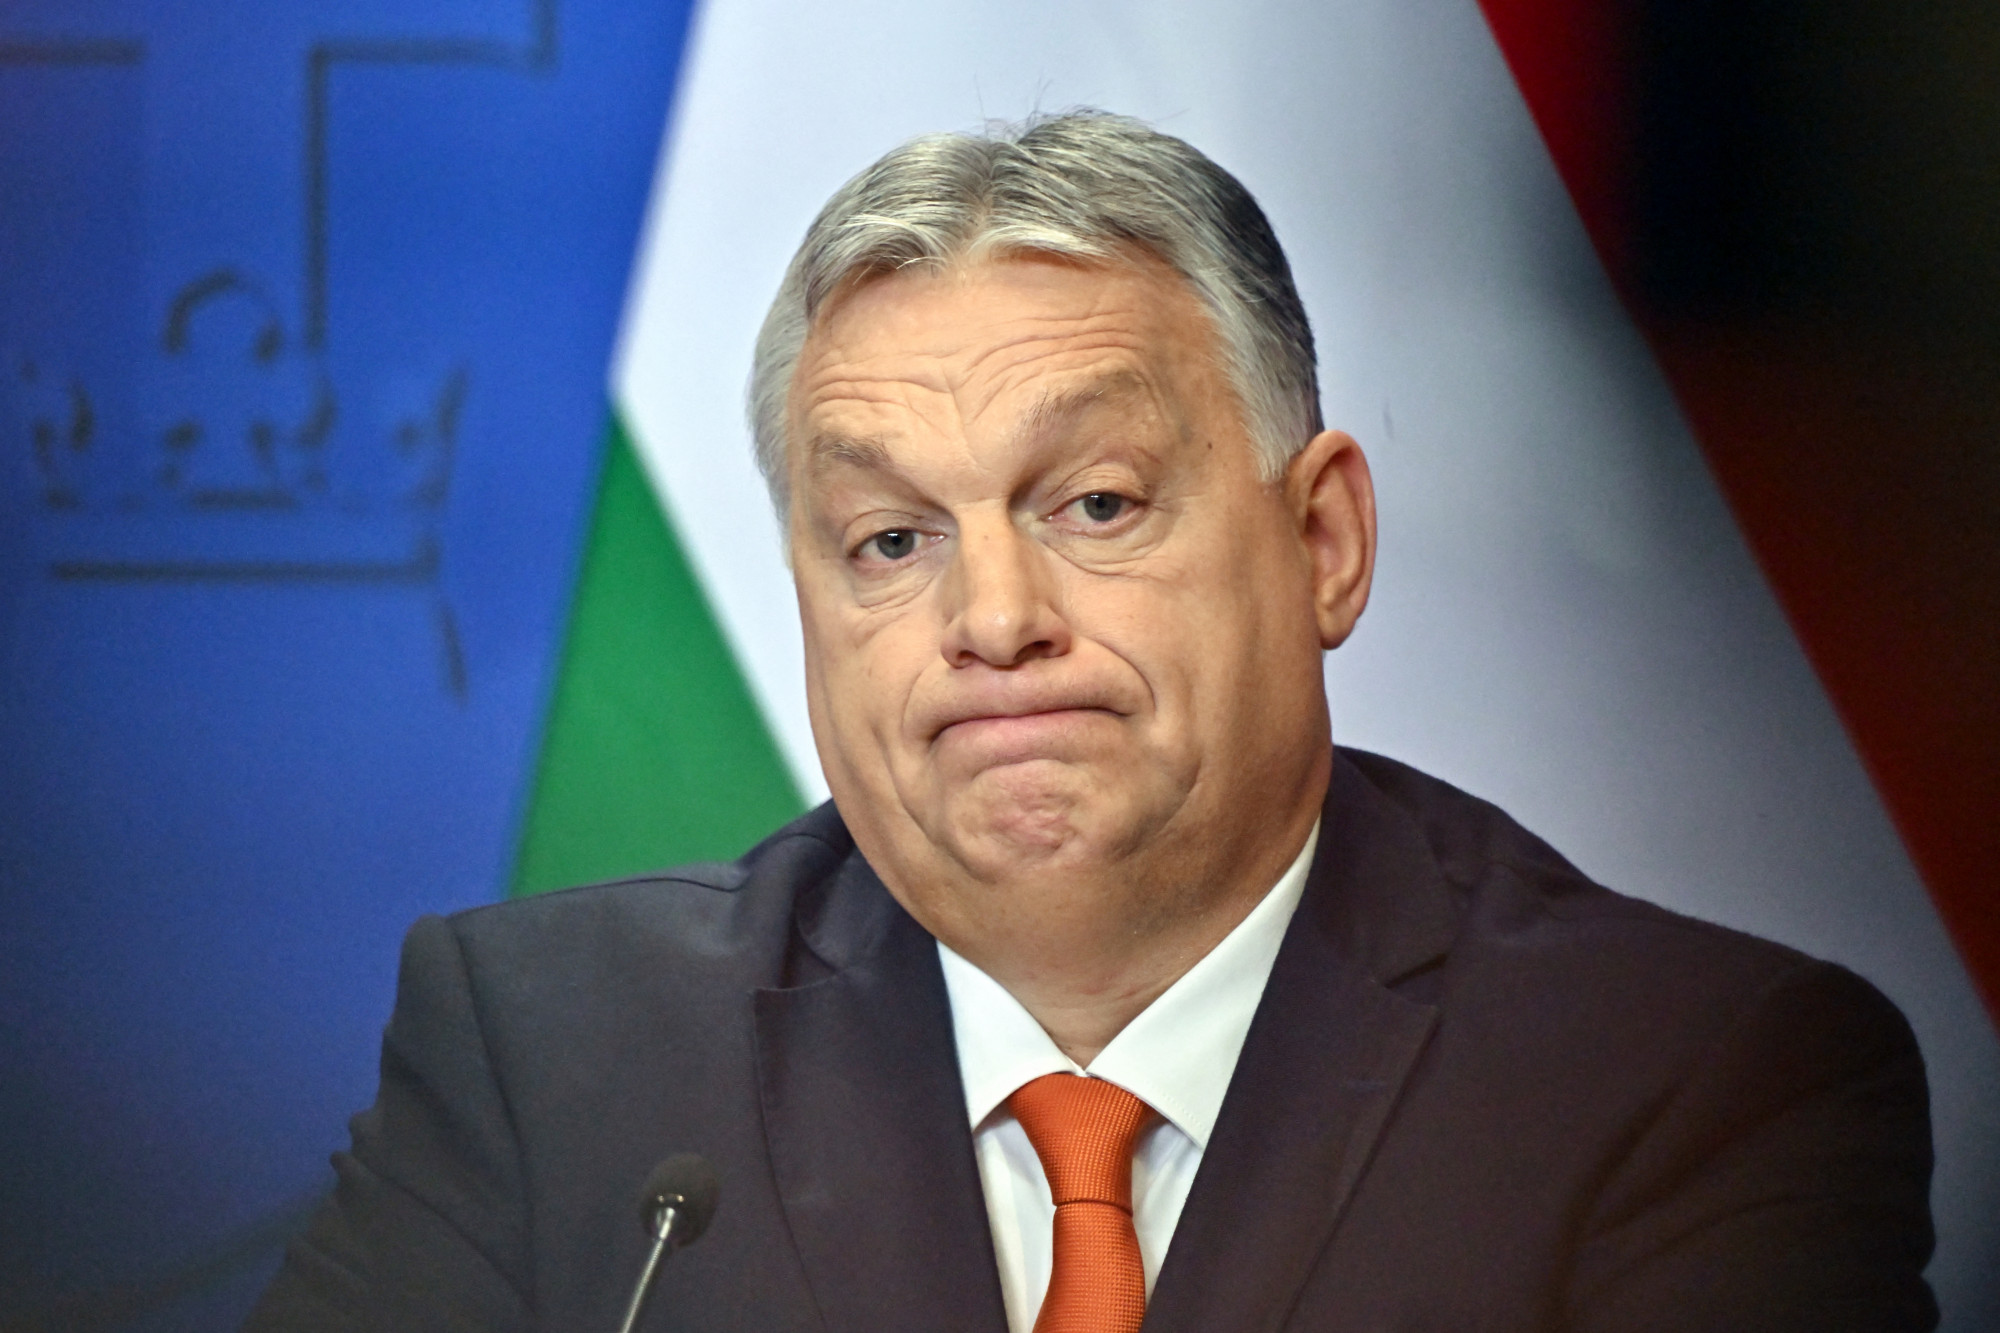 Pedagógus szakszervezetek: Orbán hazudott arról, hogy az ő javaslatuk miatt alacsony a kezdő tanárok fizetése